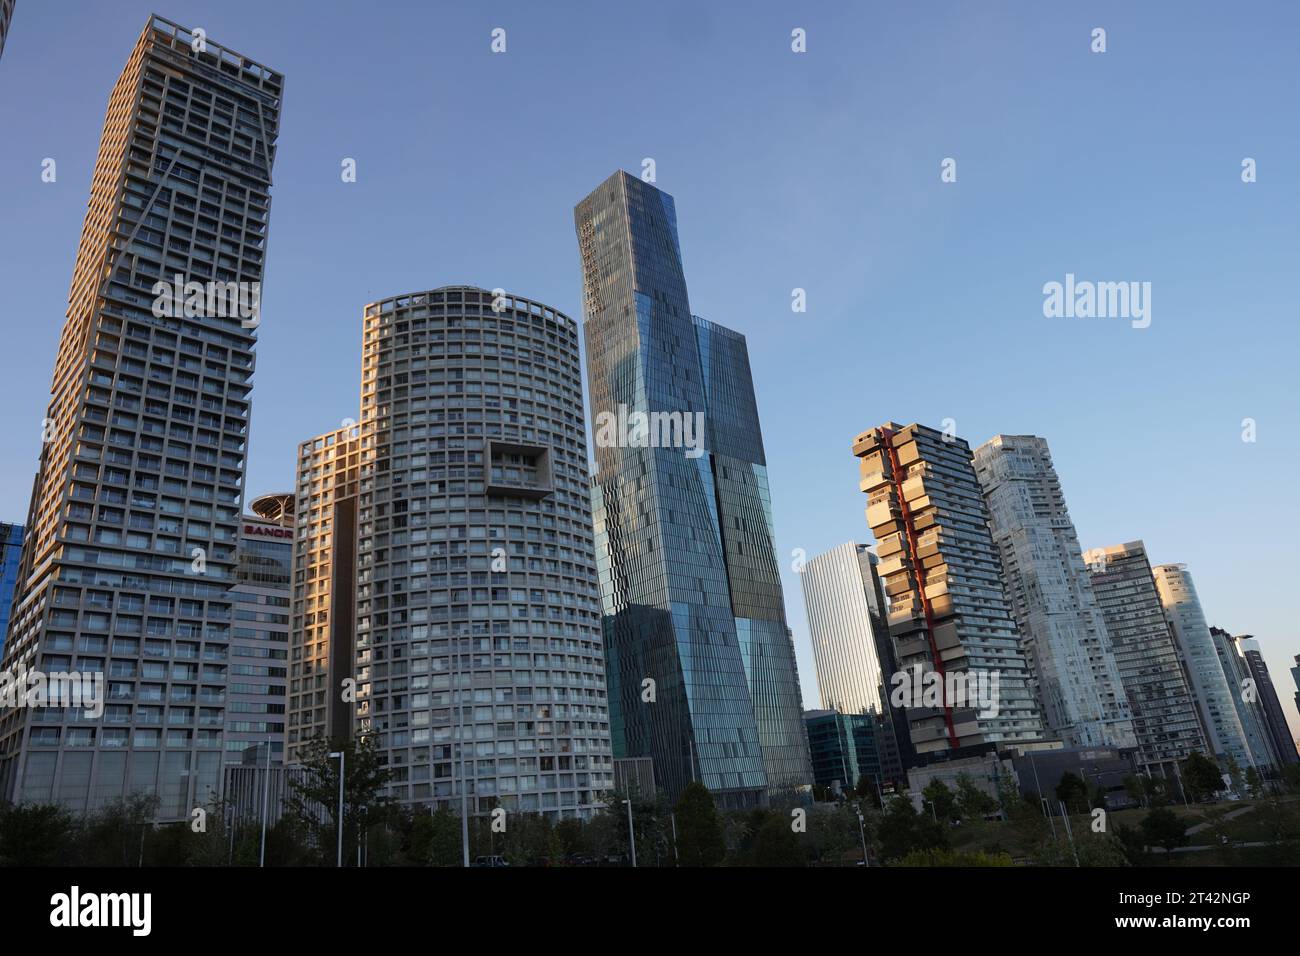 Dieses atemberaubende Bild zeigt eine pulsierende Skyline der Stadt mit einer Reihe von hohen Glasgebäuden Stockfoto